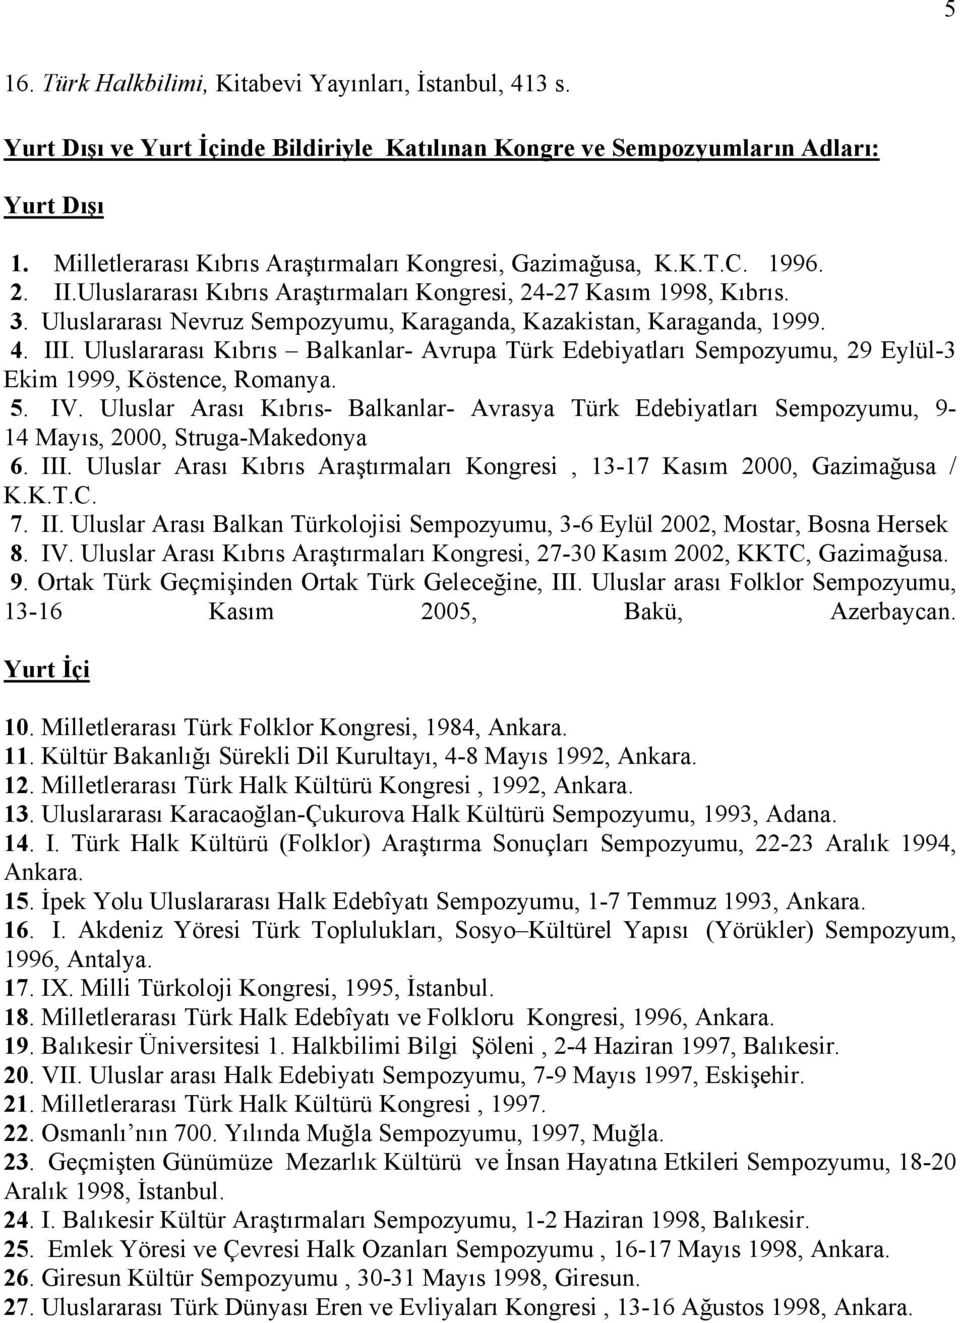 Uluslararası Nevruz Sempozyumu, Karaganda, Kazakistan, Karaganda, 1999. 4. III. Uluslararası Kıbrıs Balkanlar- Avrupa Türk Edebiyatları Sempozyumu, 29 Eylül-3 Ekim 1999, Köstence, Romanya. 5. IV.